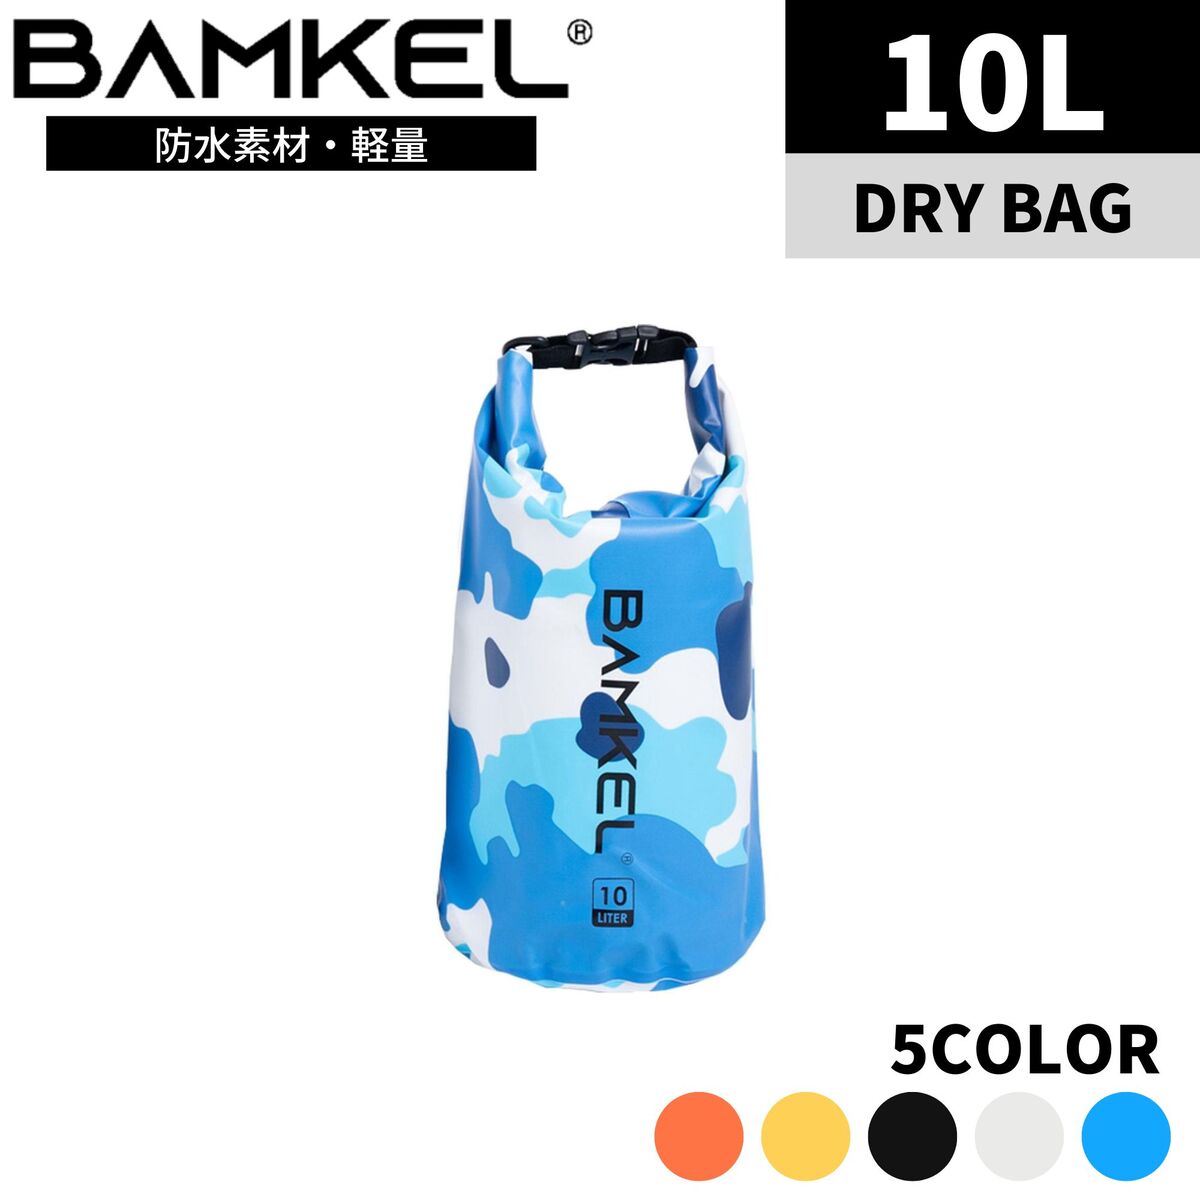 BAMKEL(バンケル) ウォータープルーフバッグ 10L 大容量 選べるカラー ドラム型 サップバッグ ランタンケース ツールボックス ギアケース 防水 収納 アウトドア キャンプ 韓国ブランド ブルースカイ 正規品